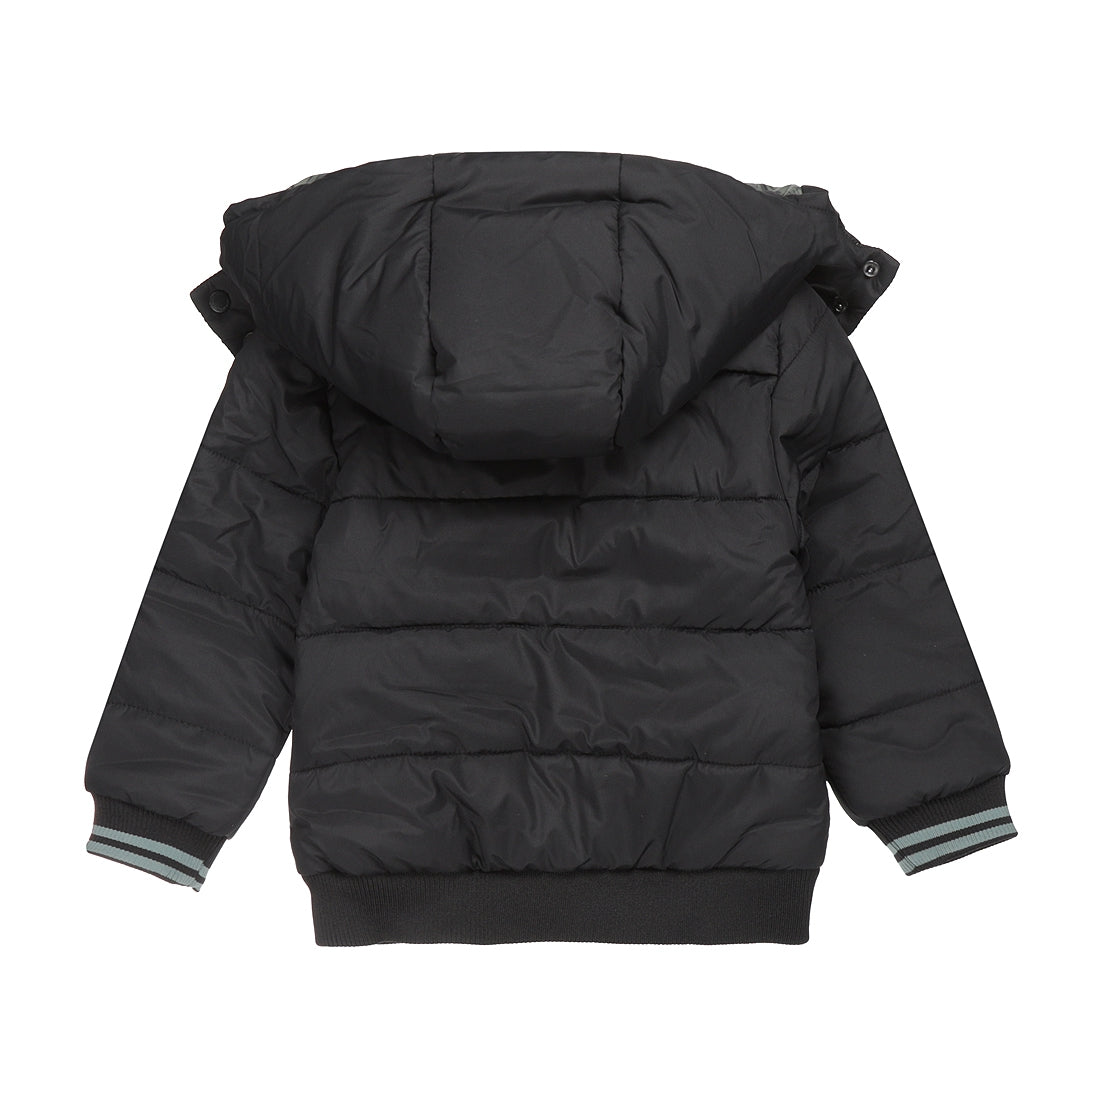 Jongens Jacket puff van Koko Noko in de kleur Black in maat 128.